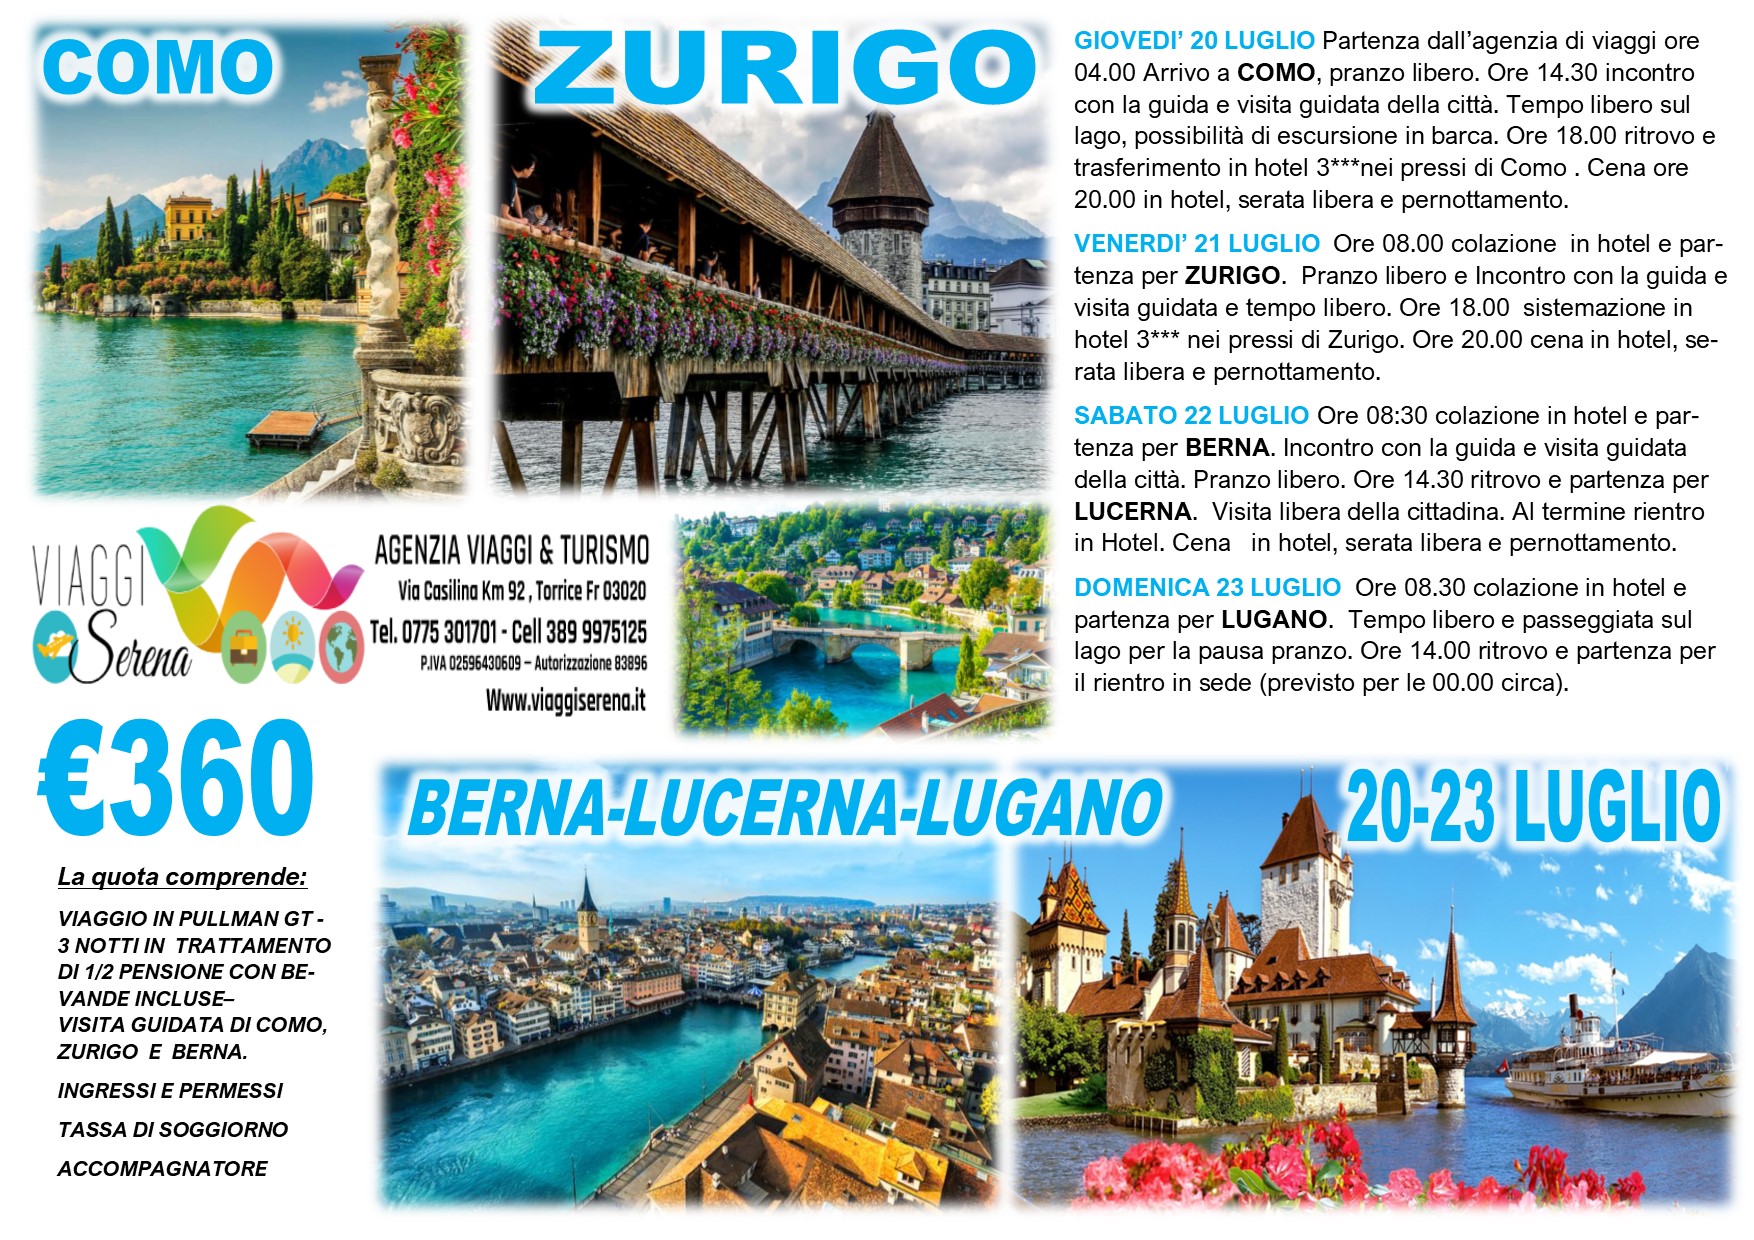 Viaggi di Gruppo: Como, Zurigo, Lucerna, Lugano & Berna 20-23 Luglio €360,00